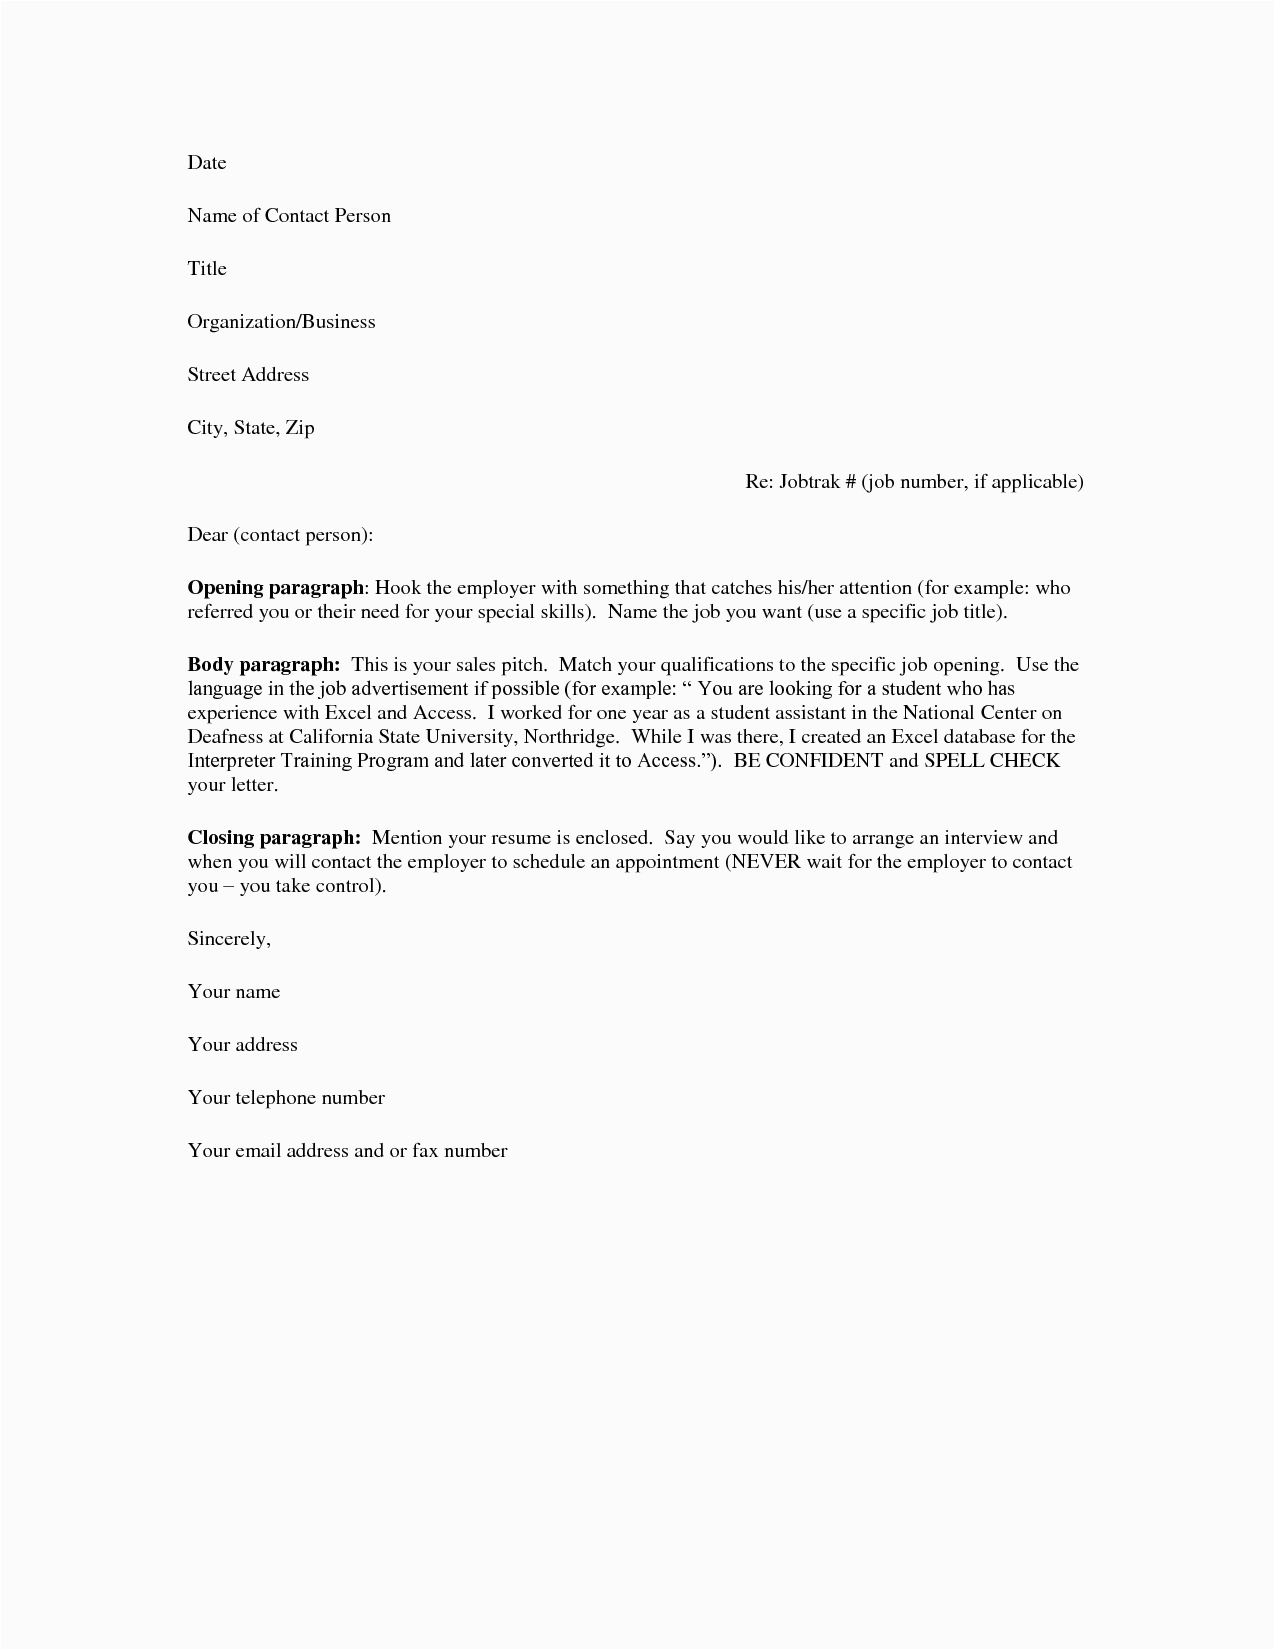 Sample Resume Cover Letter for It Job Cover Letter for Resume Fotolip